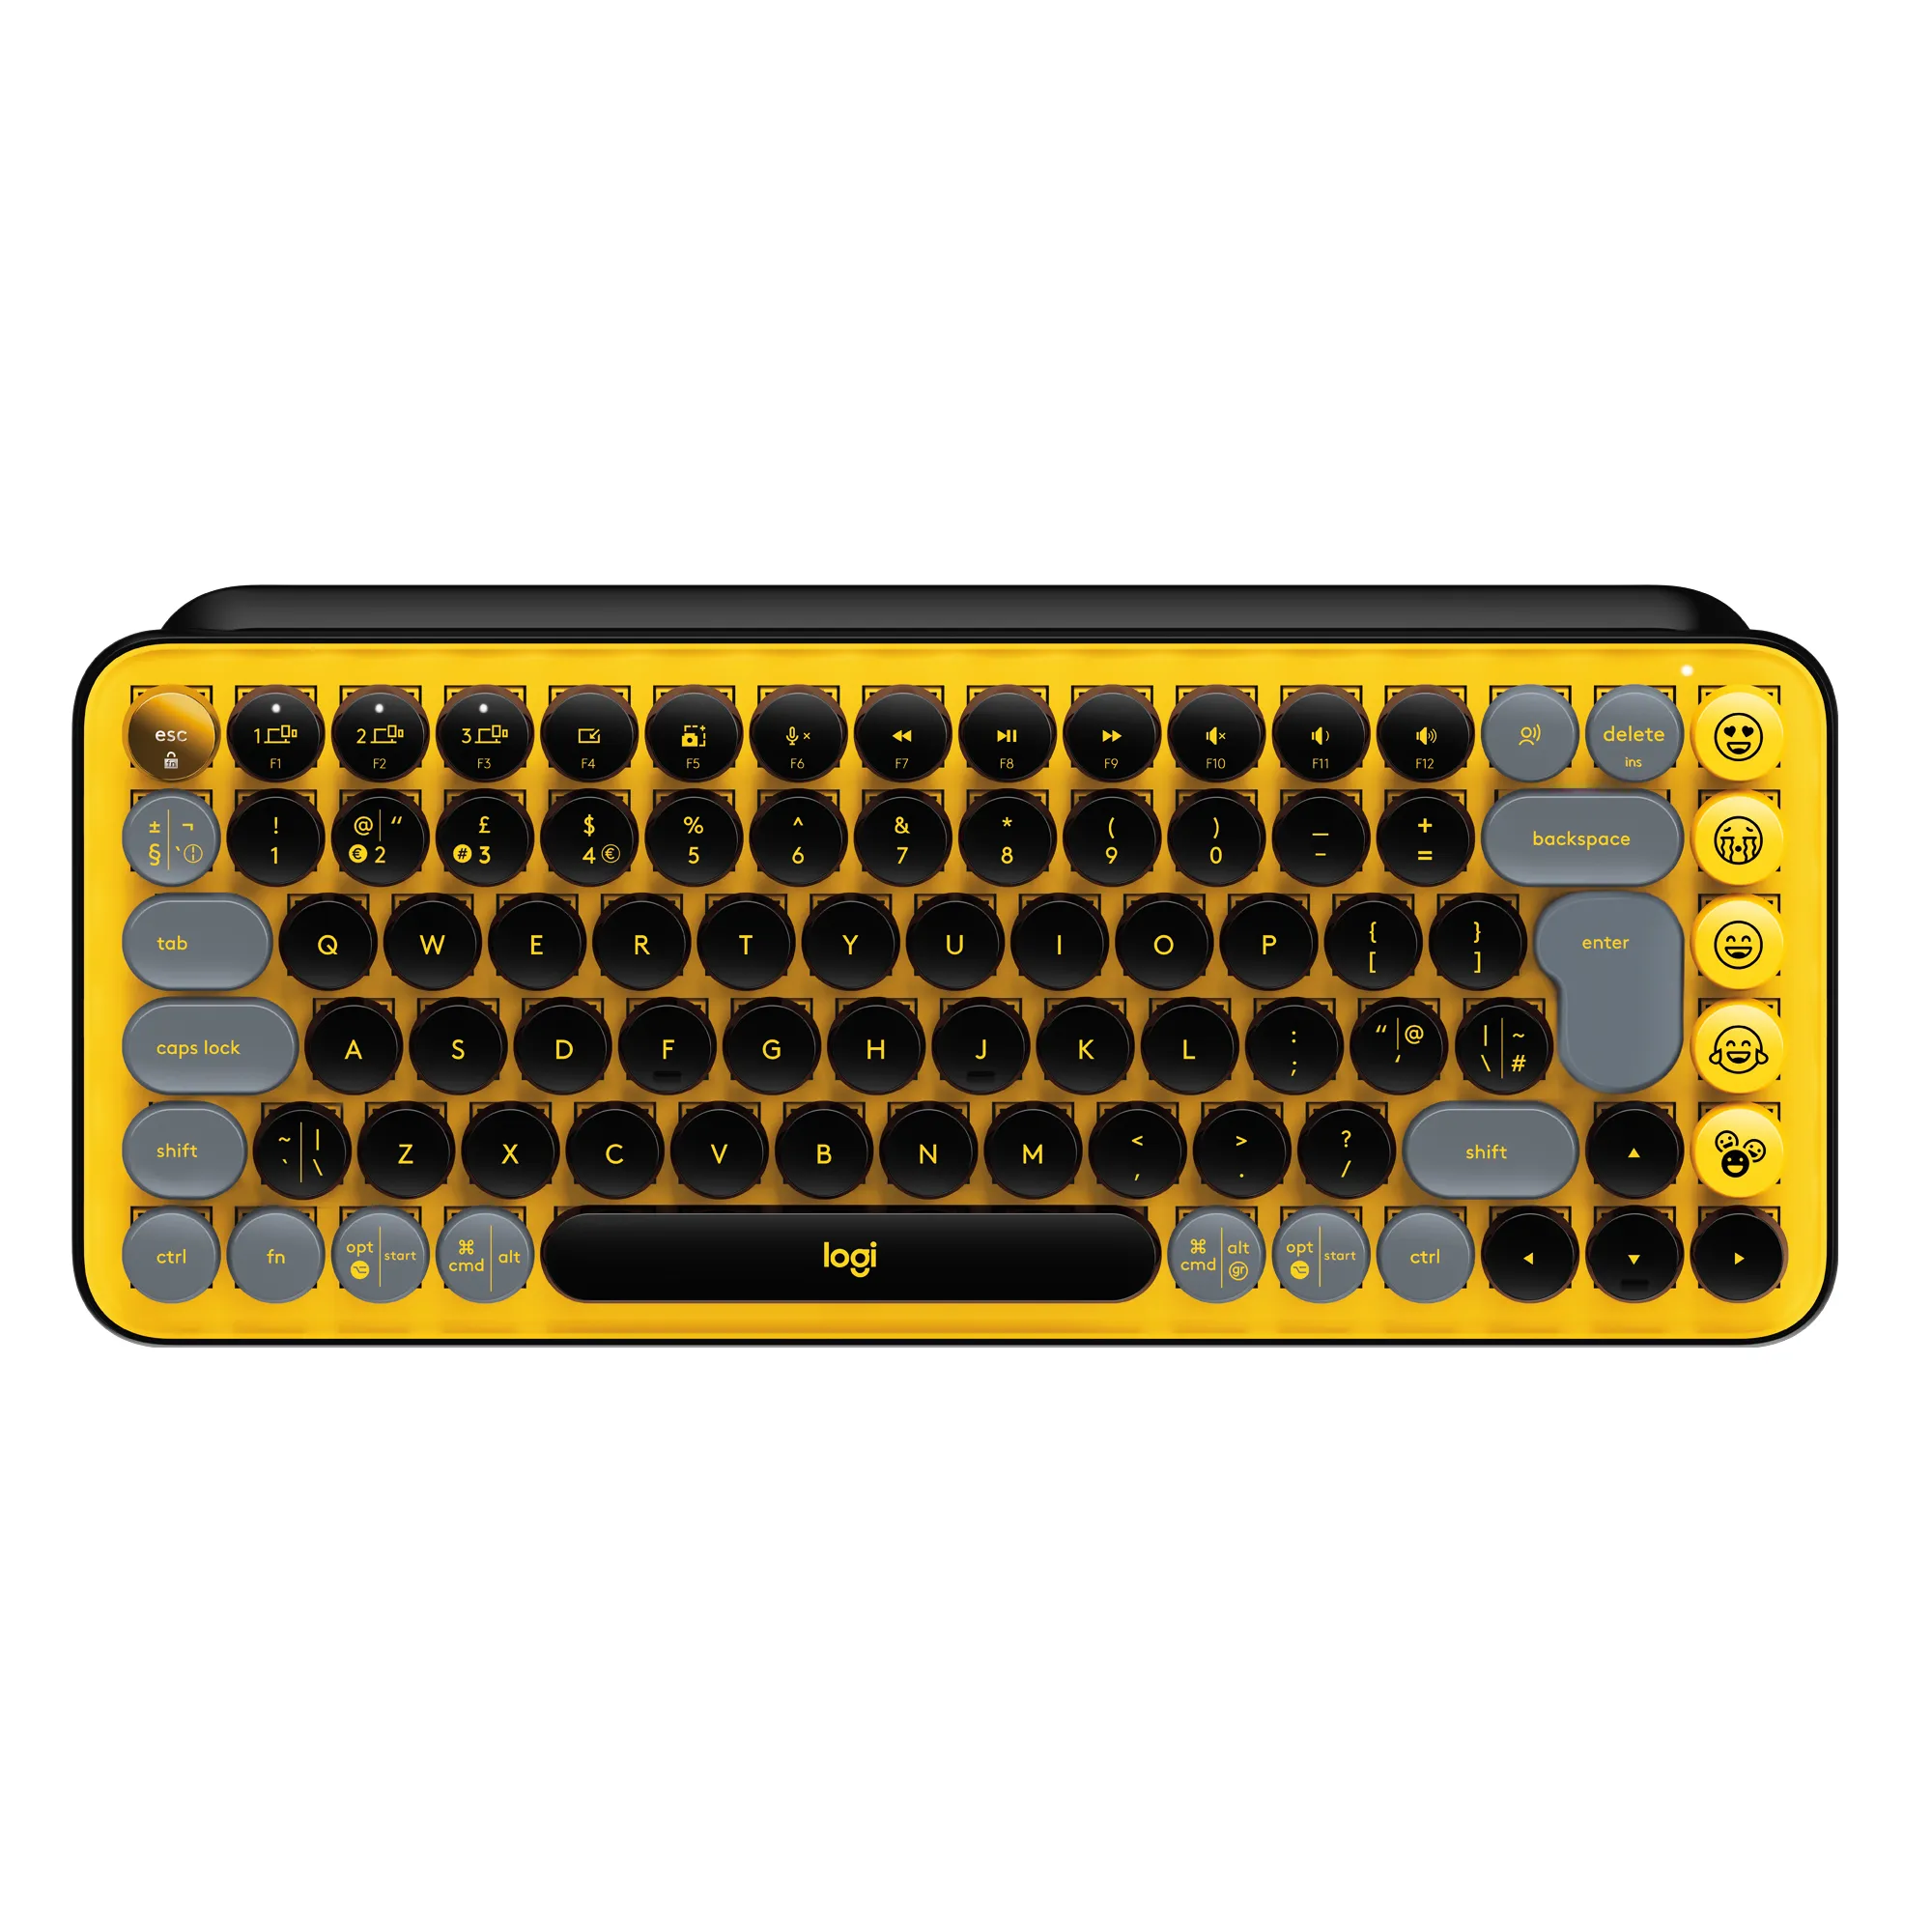  POP Keys Tastiera Meccanica Wireless con Tasti Emoji Personalizzabili, Design Compatto Durevole, Connettività Bluetooth o USB, Compatibilità Multidispositivo e OS - Blast